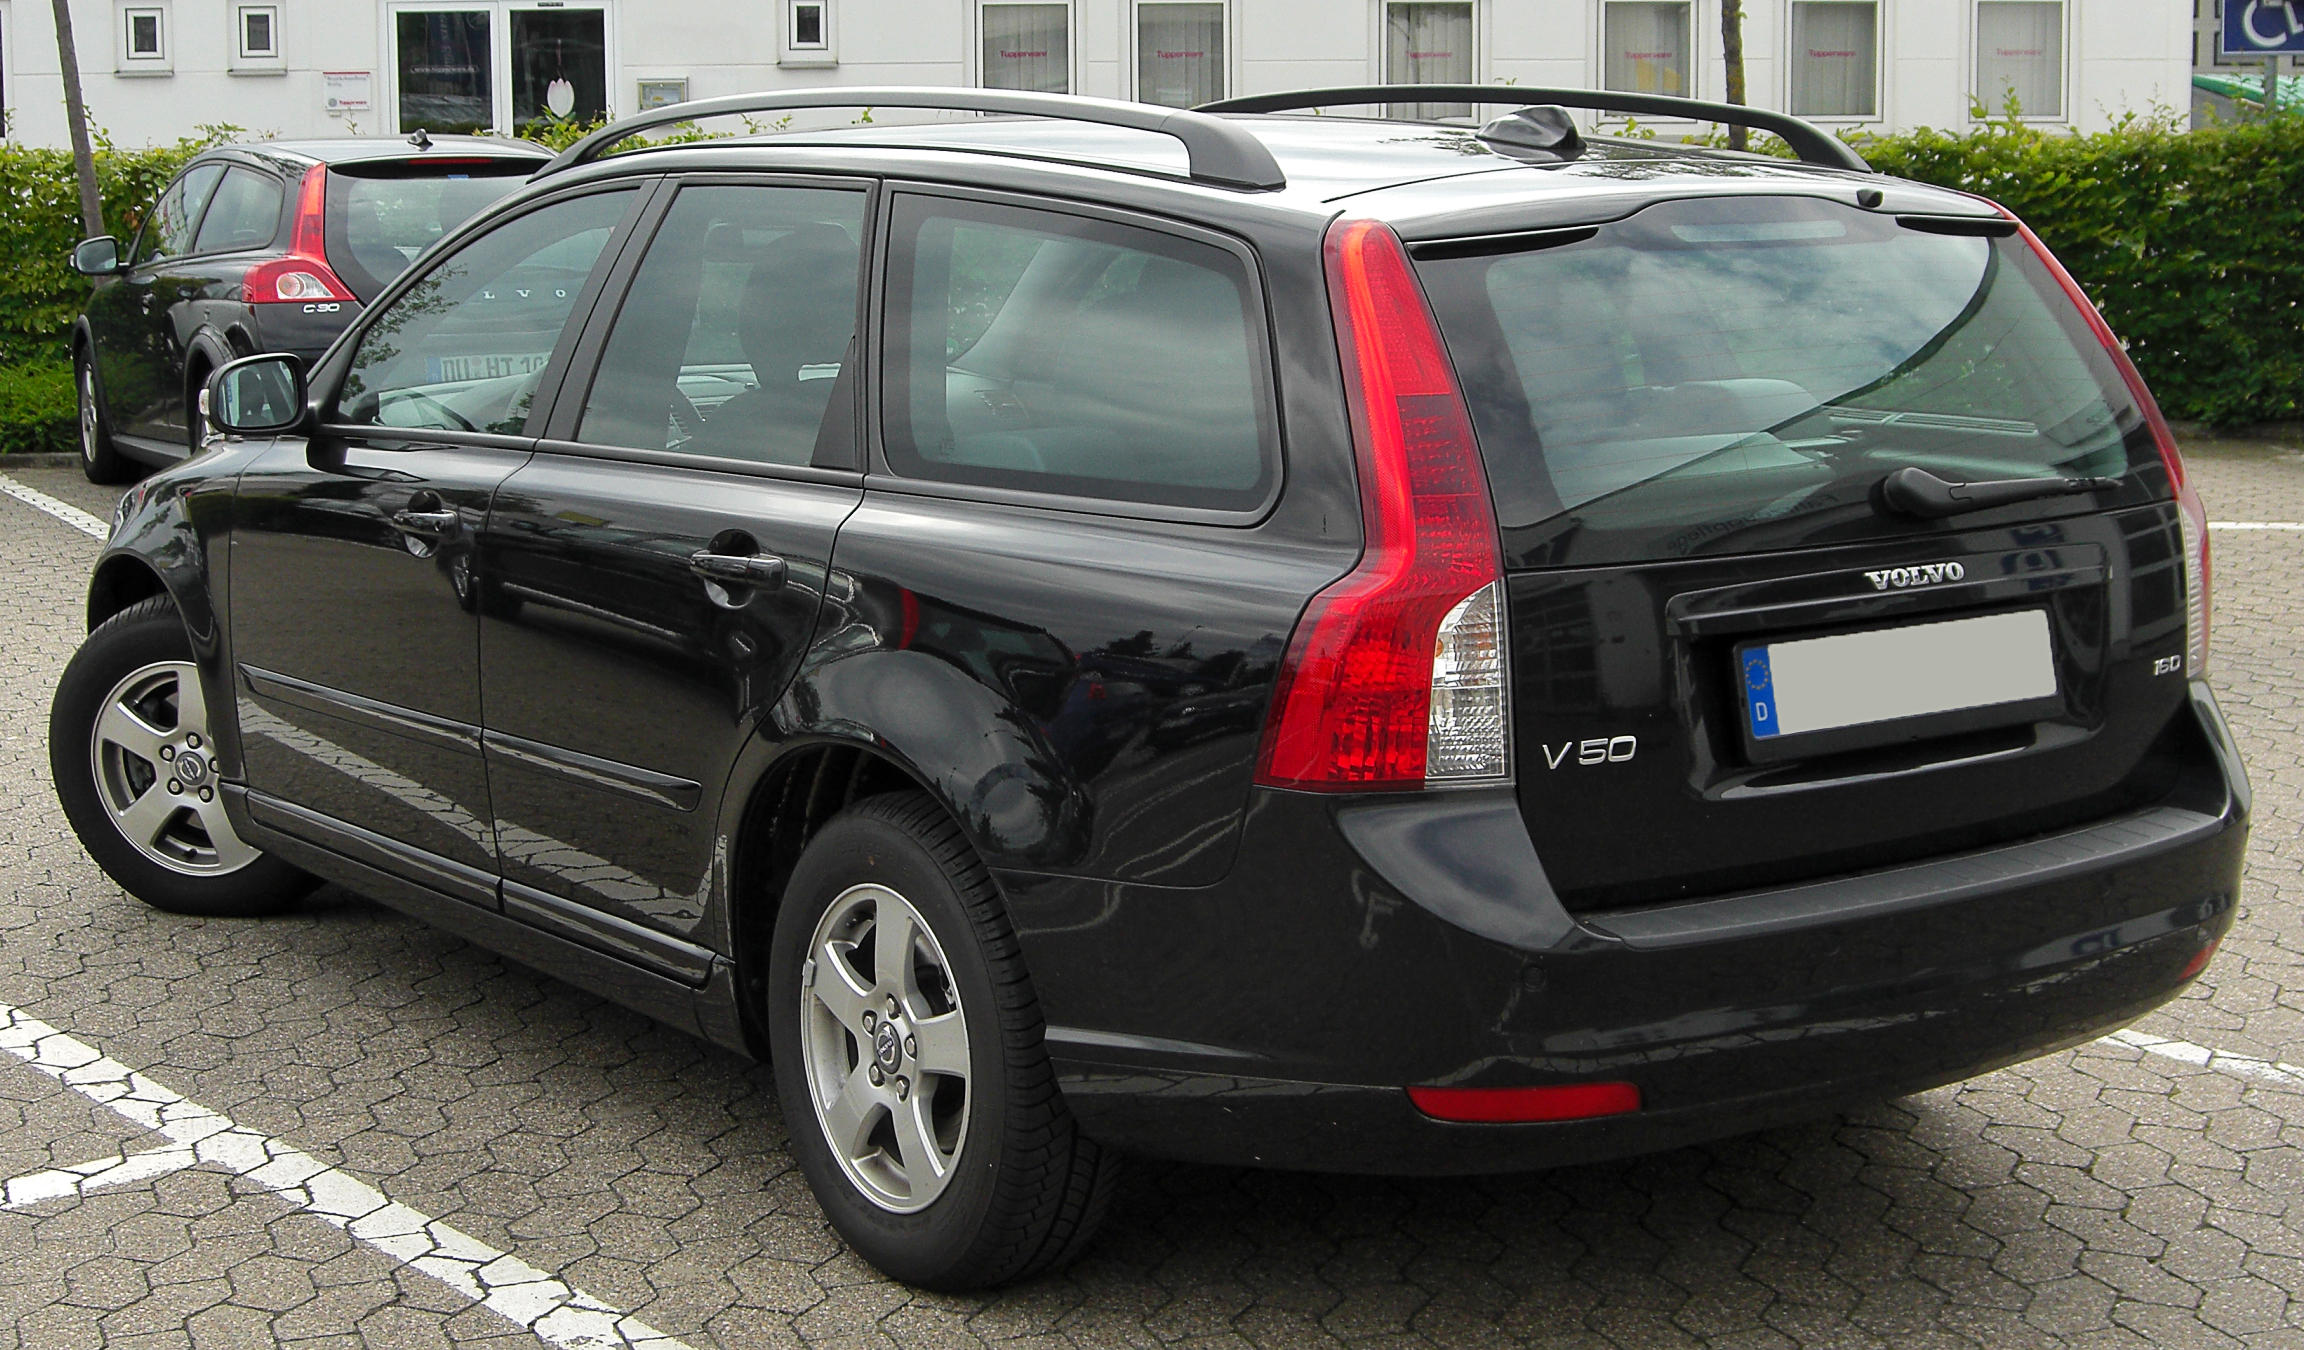 File:Volvo V50 1.6 D Facelift rear 20100731.jpg - Wikimedia Commons